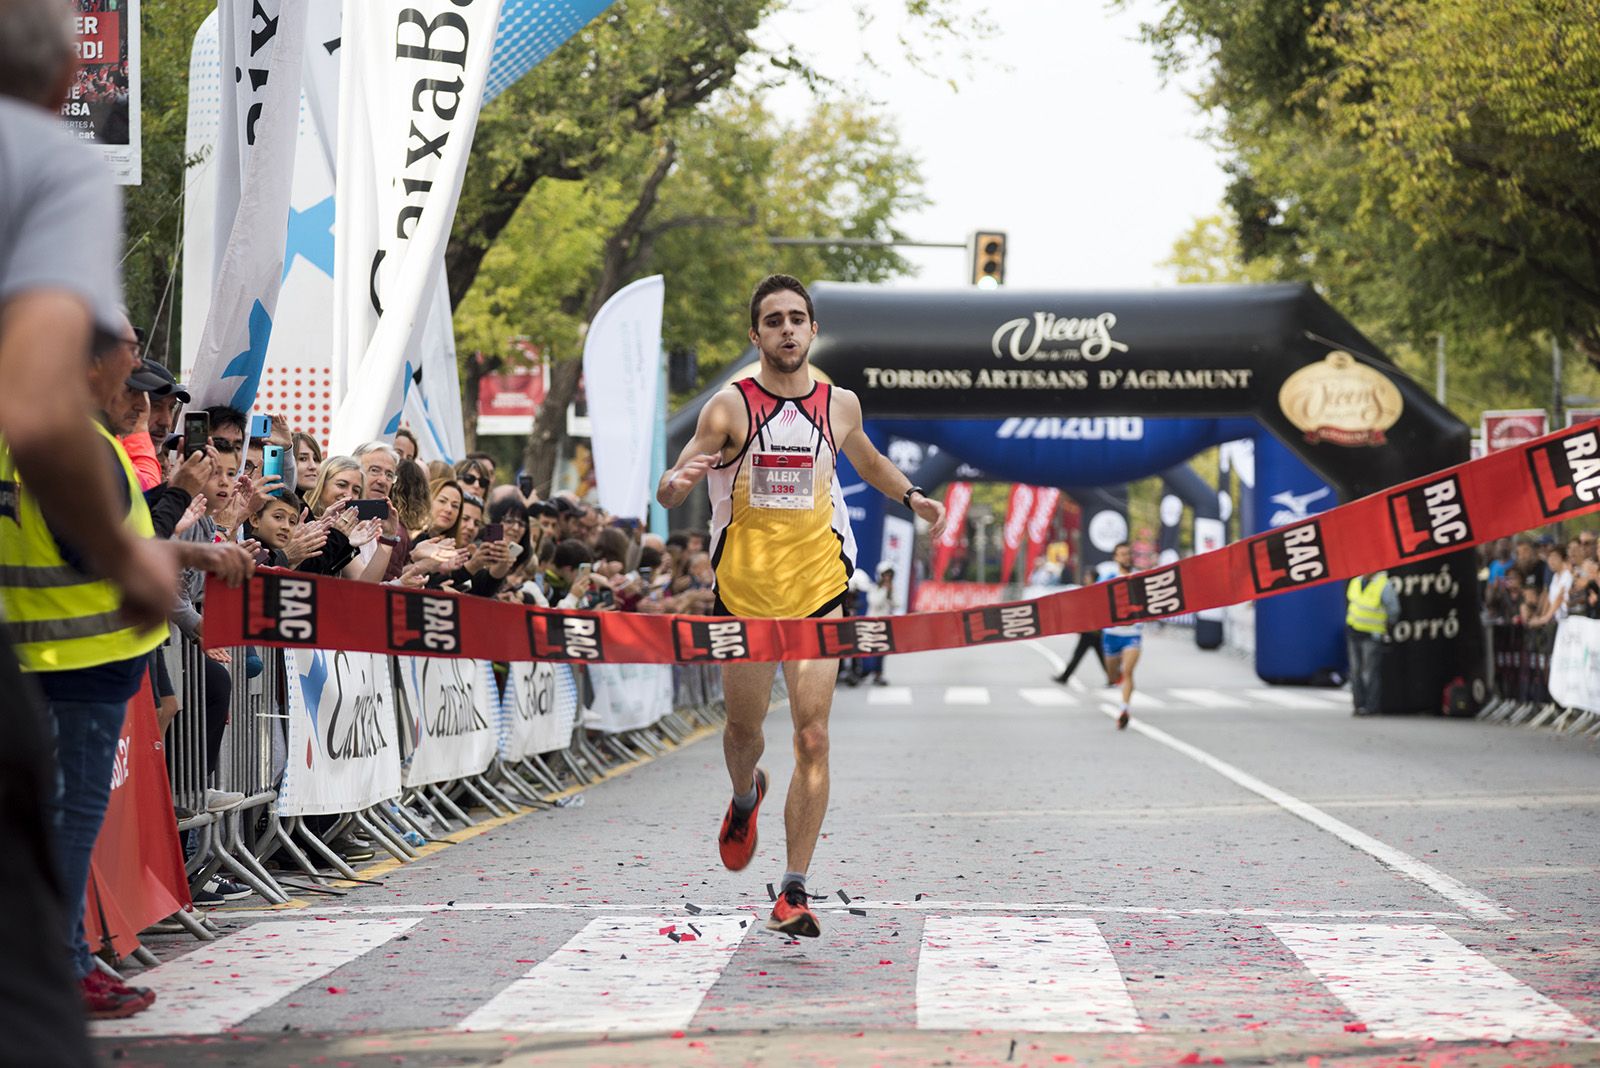 Aleix Serra guanyador de La Cursa de Rac1 a Sant Cugat. FOTO: Bernat Millet.